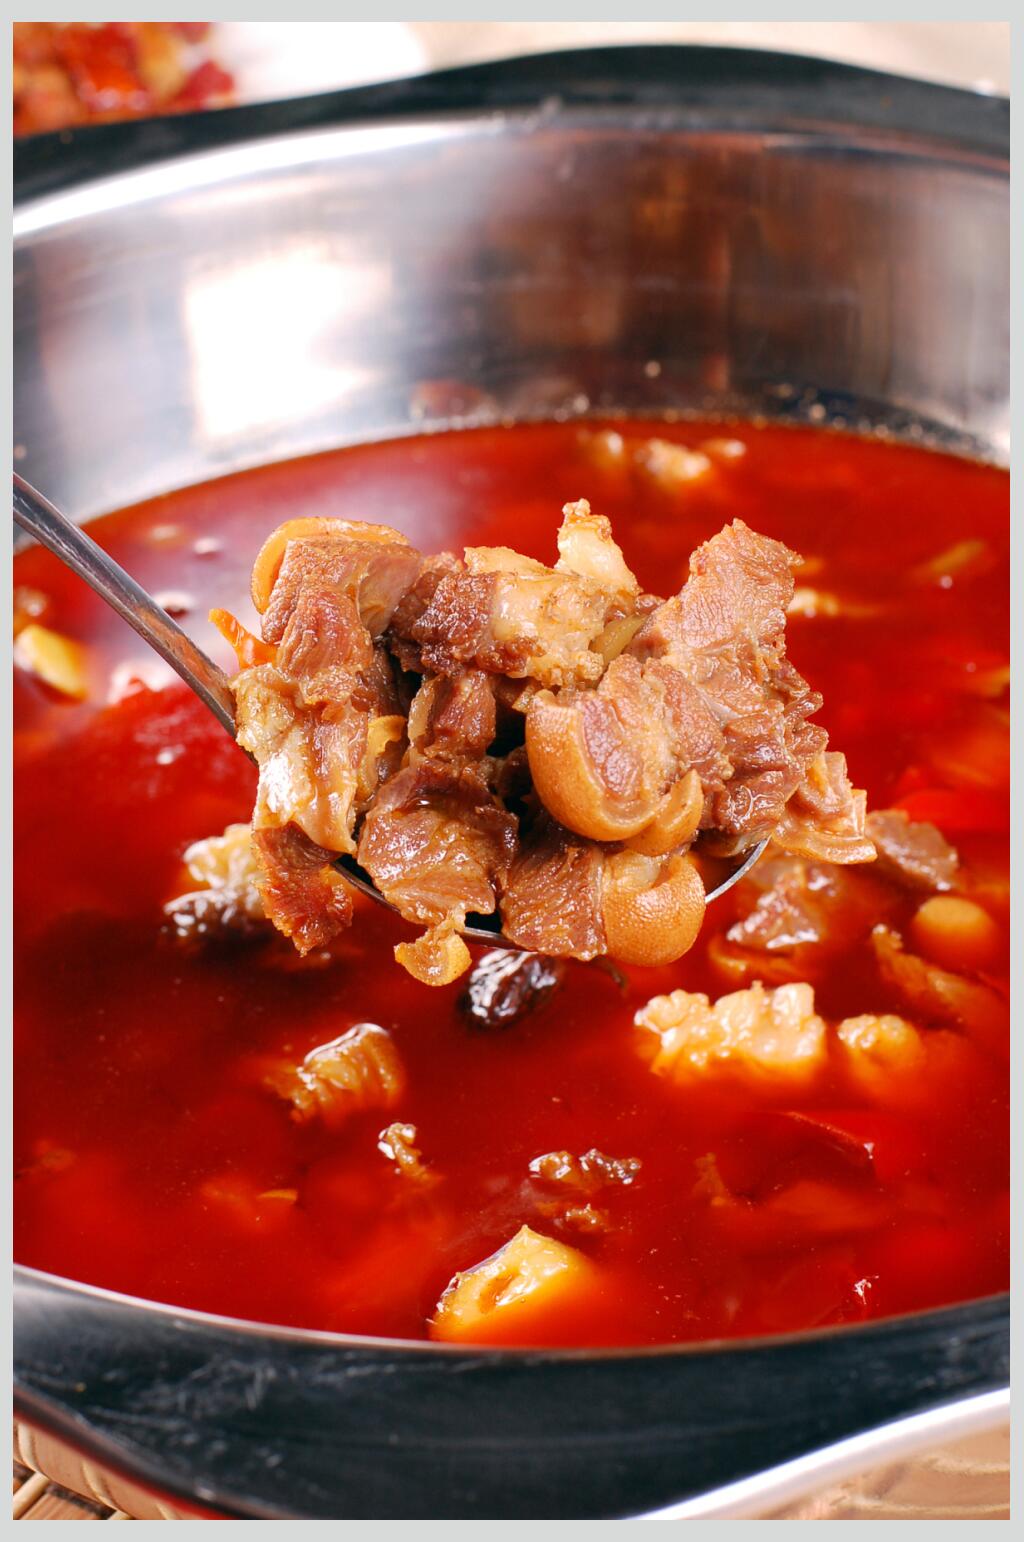 川菜红汤羊肉图片